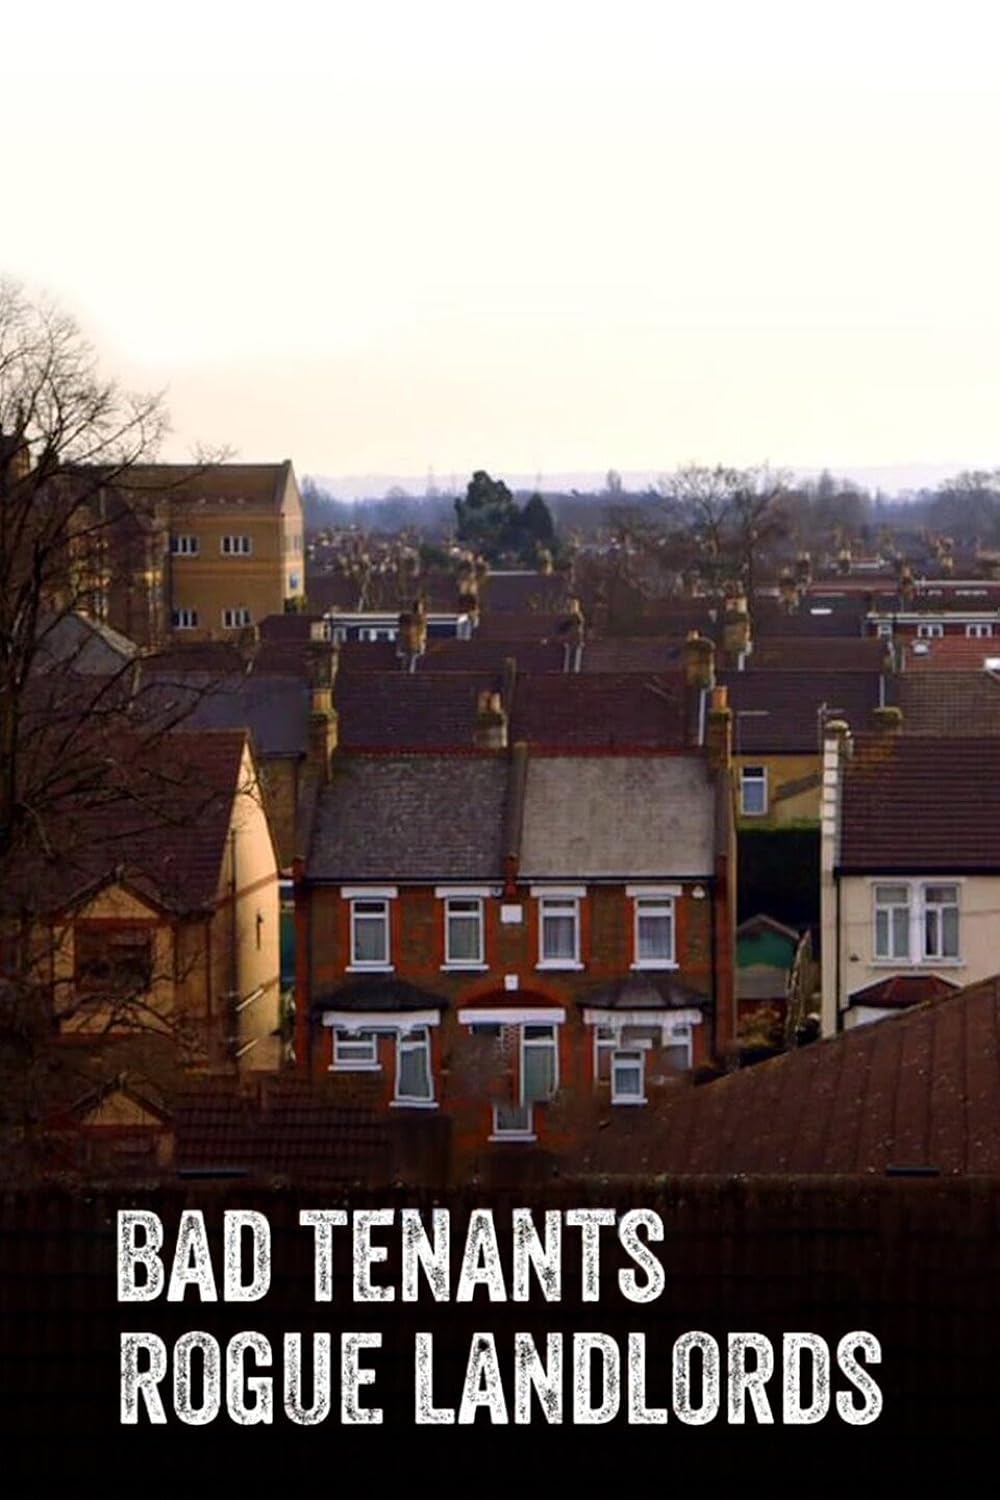 Bad Tenants, Rogue Landlords